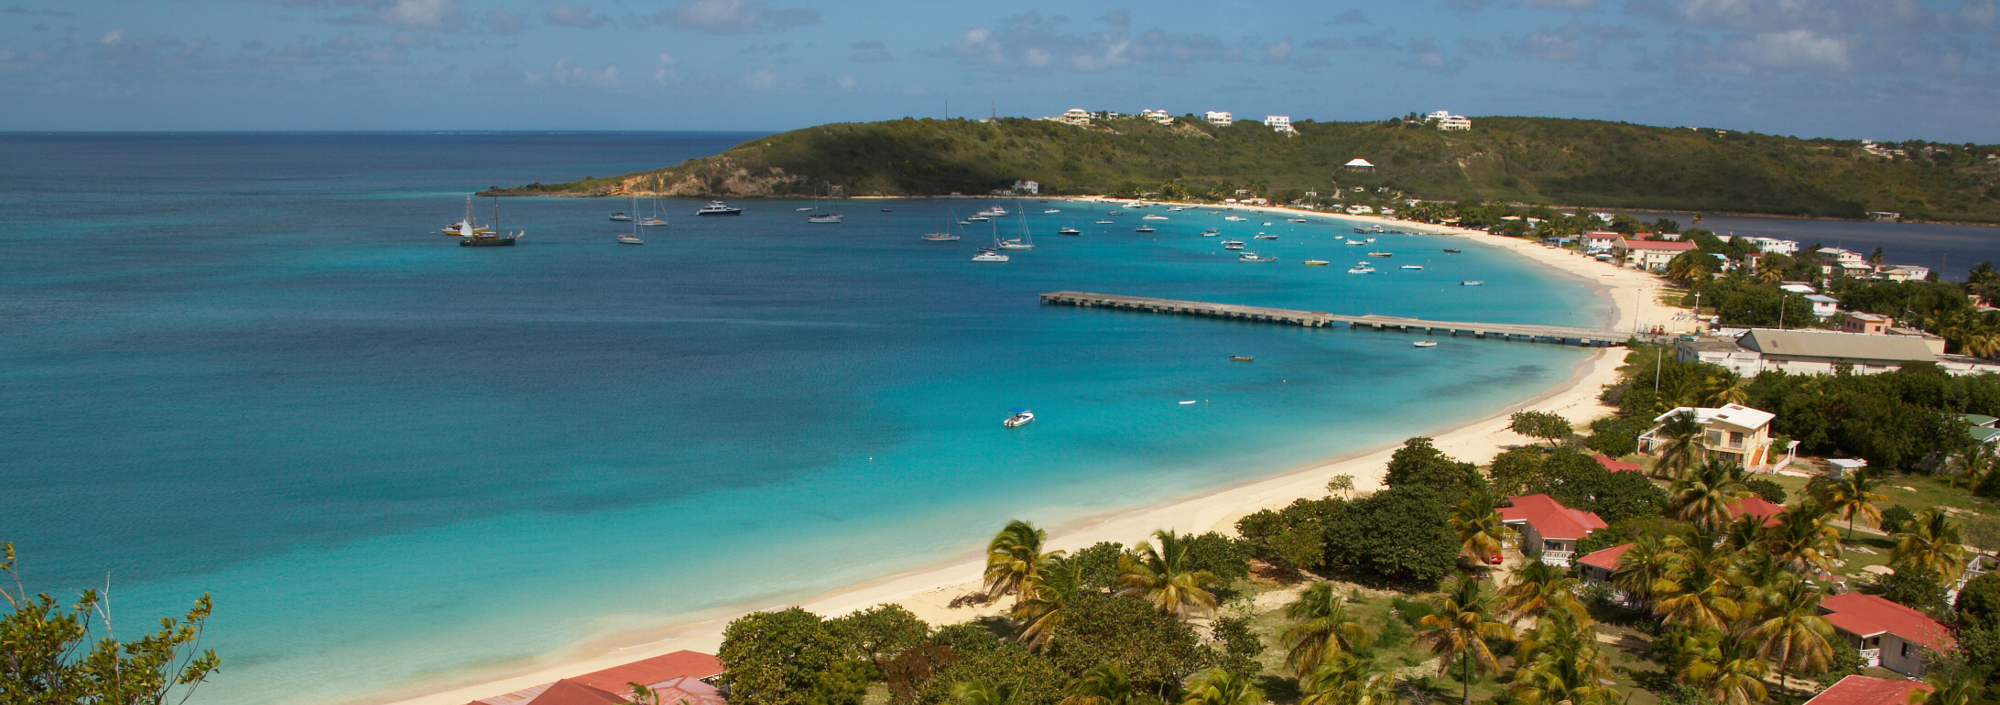 Bucht von Anguilla mit kleinem Ort, Palmen, weißem Sandstrand und ankernden Jachten